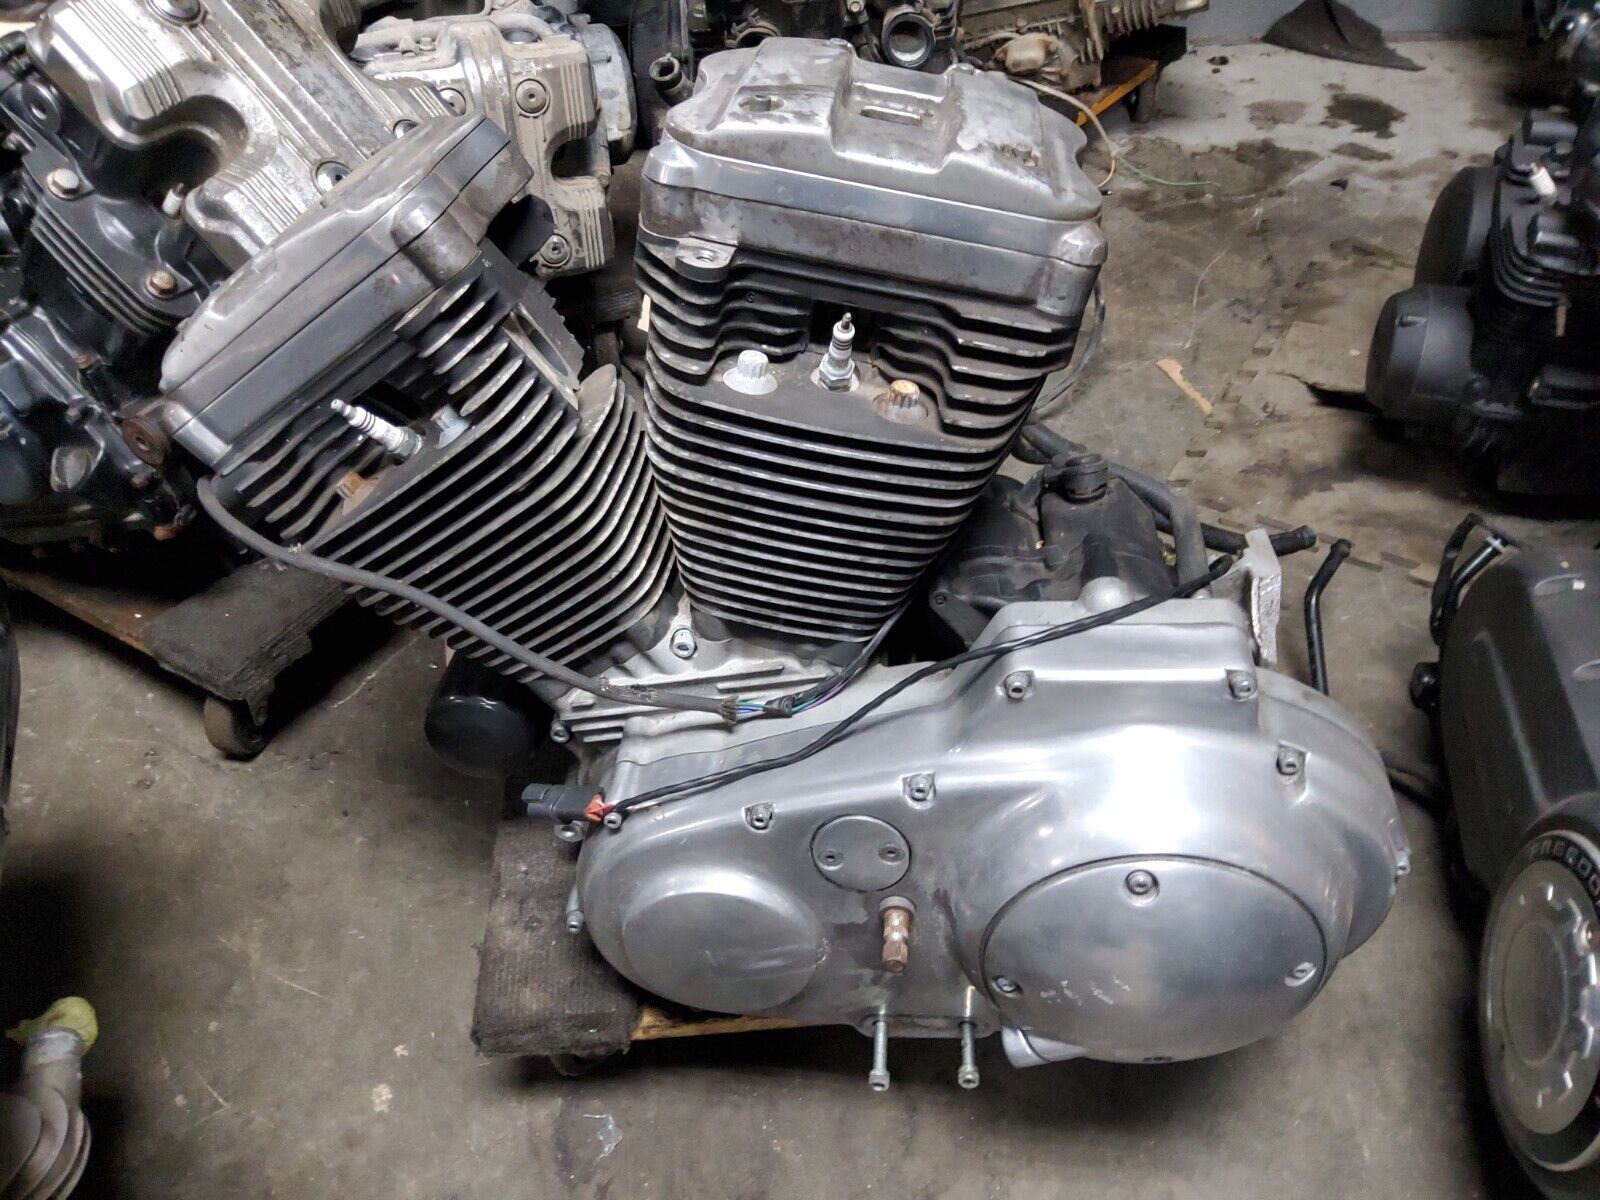 2001 01 98-03 Harley-Davidson Sportster XL1200 Motor Engine Complete Assembly 